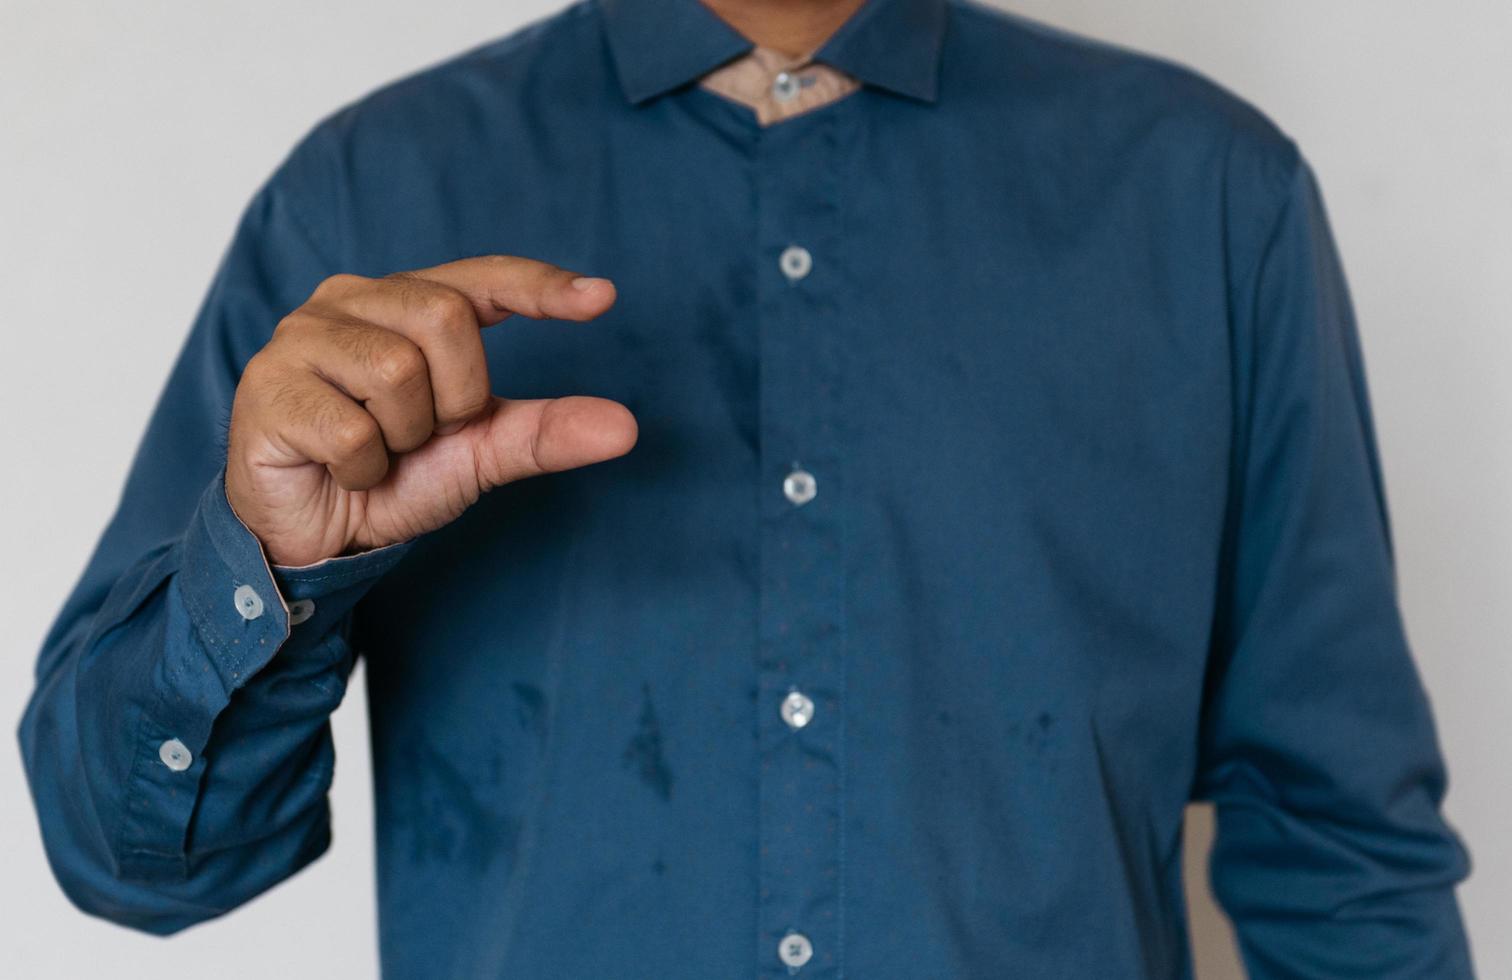 jonge knappe man met lichtblauw shirt met ander gedrag op het werk foto